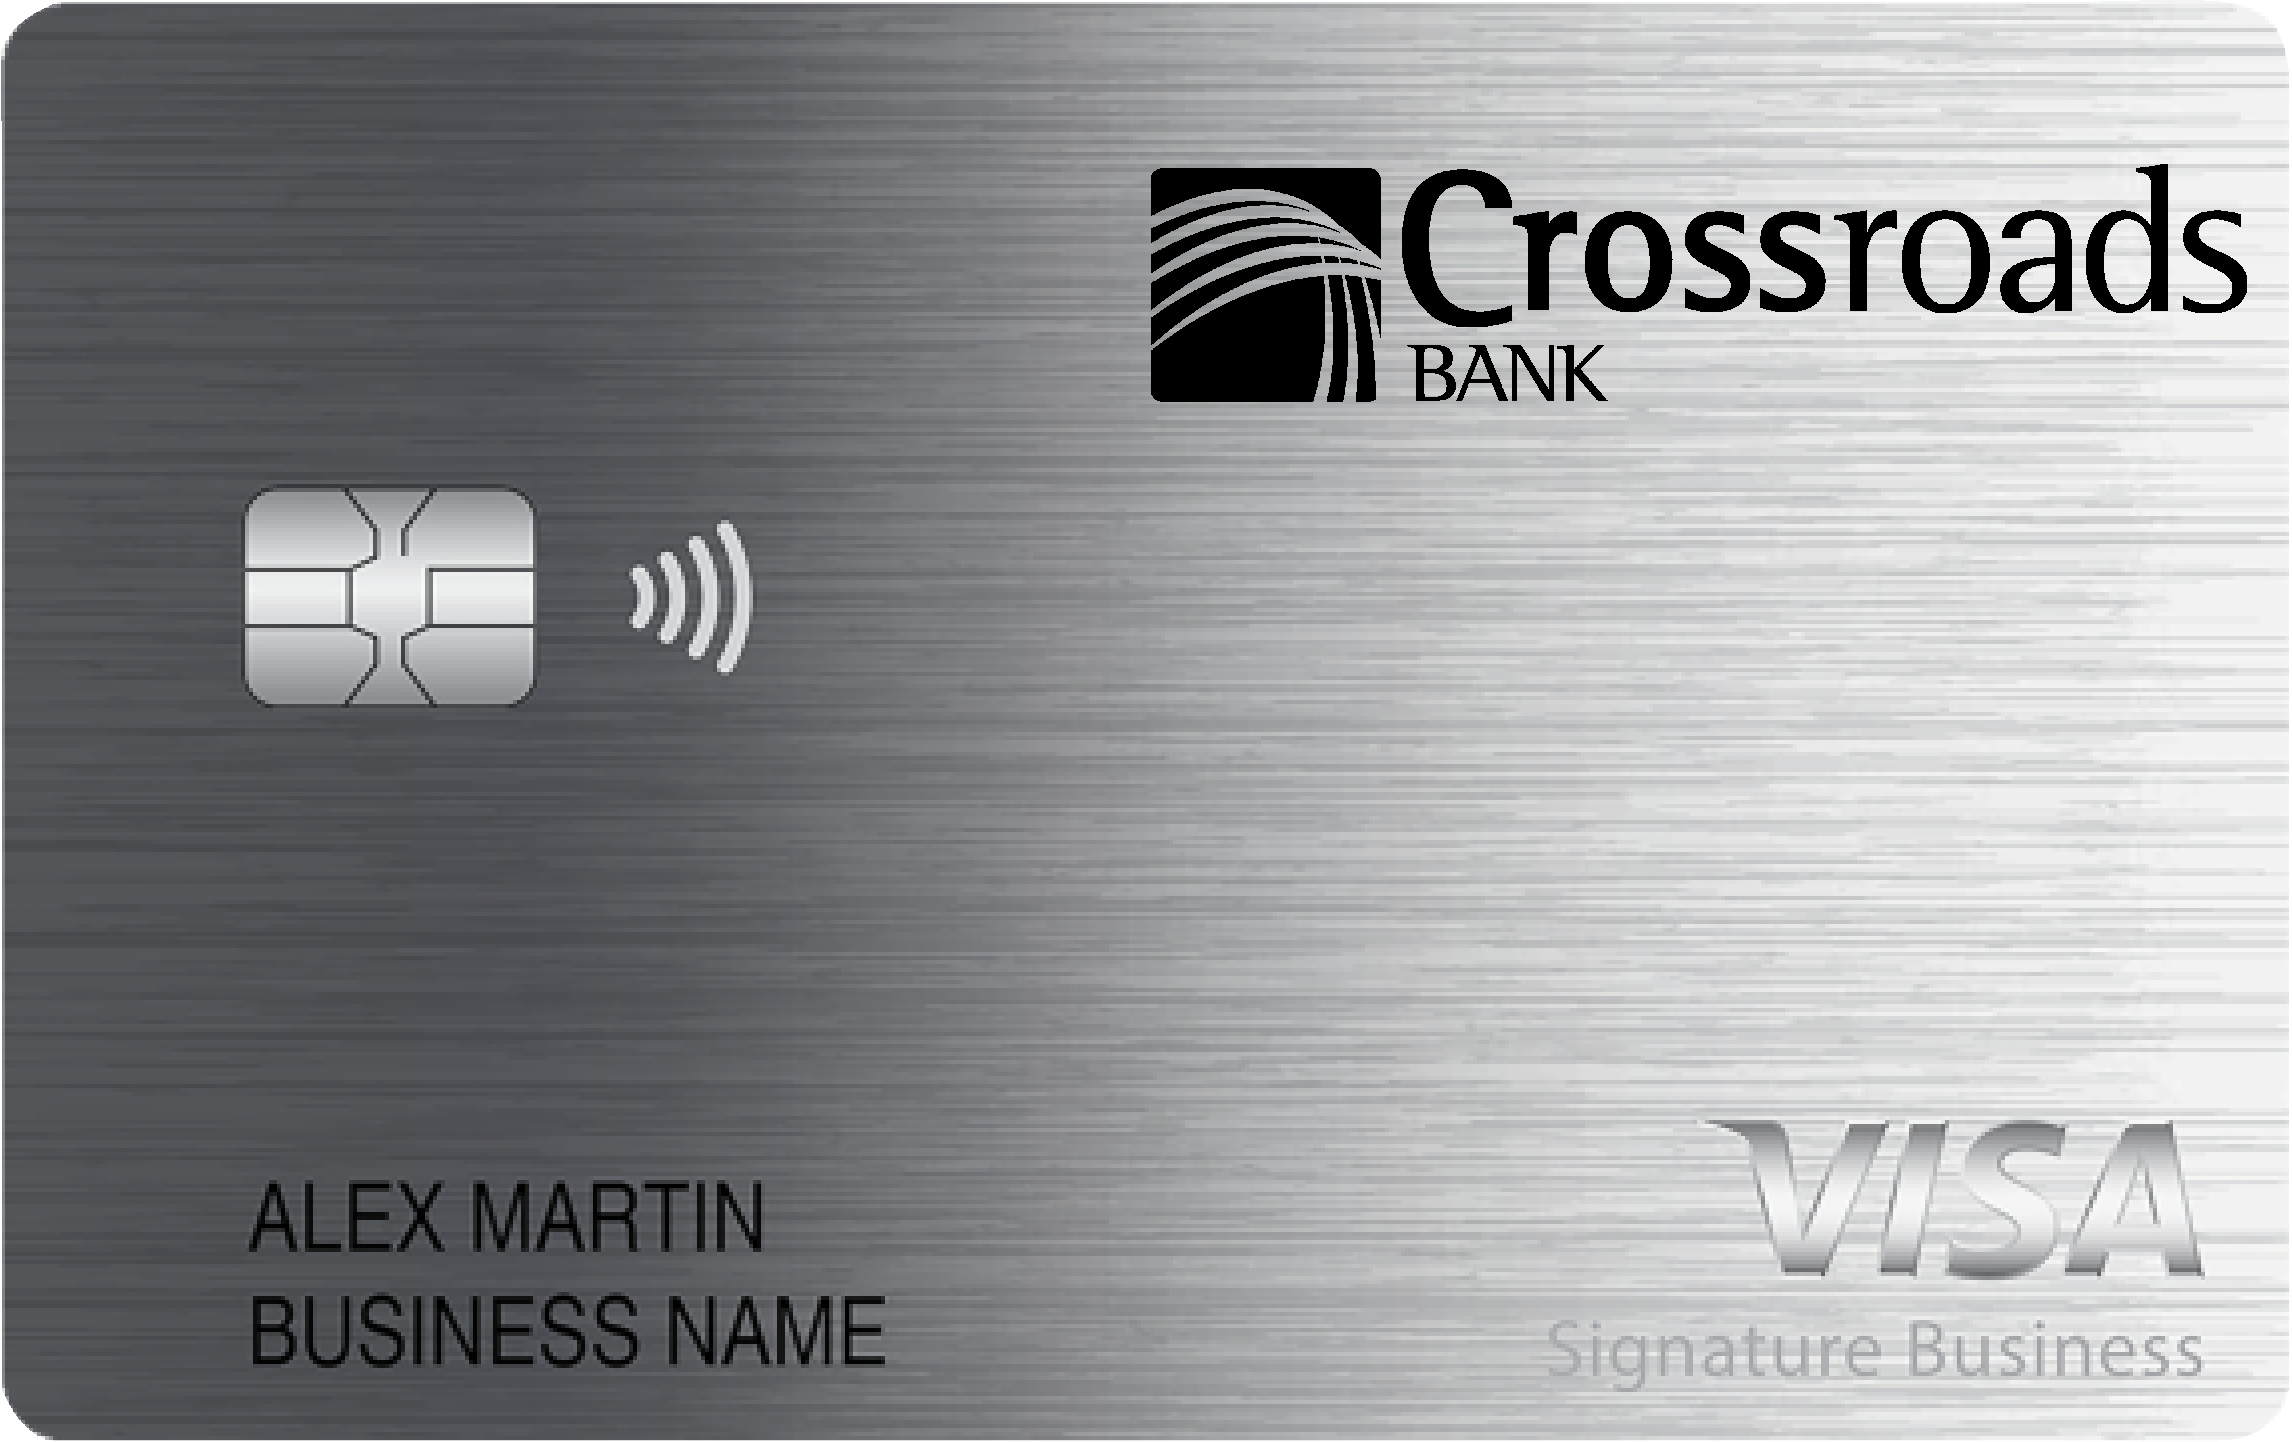 Crossroads Bank Smart Business Rewards Card